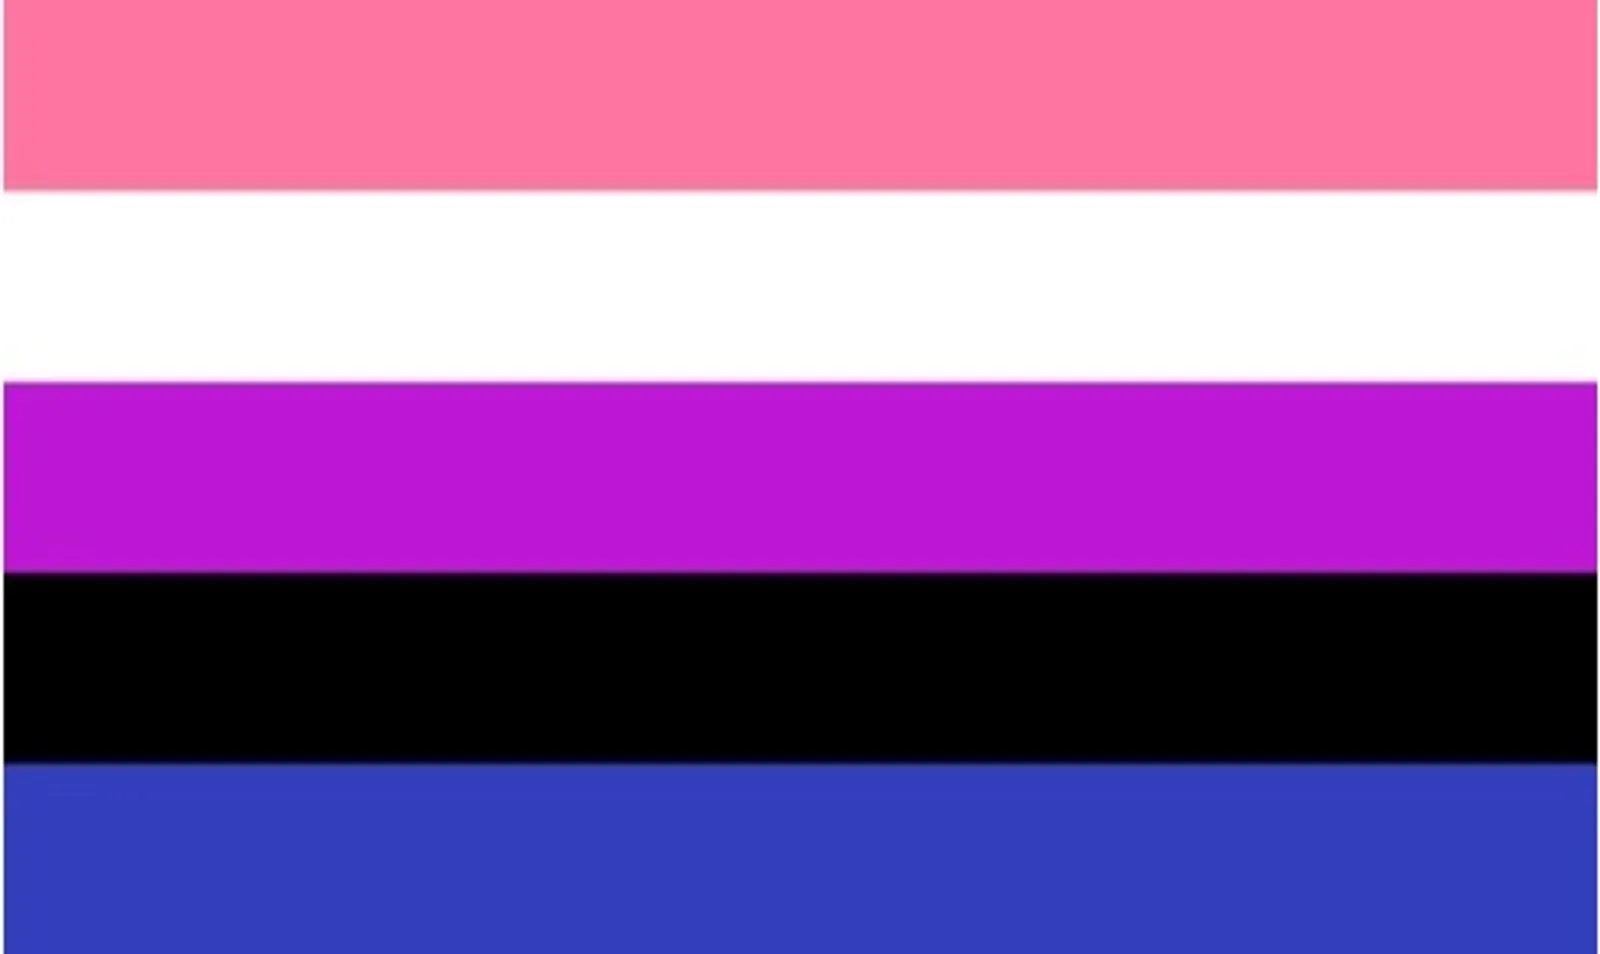 Mengenal Ragam Orientasi Seksual, Inilah 16 Lambang Bendera LGBT+